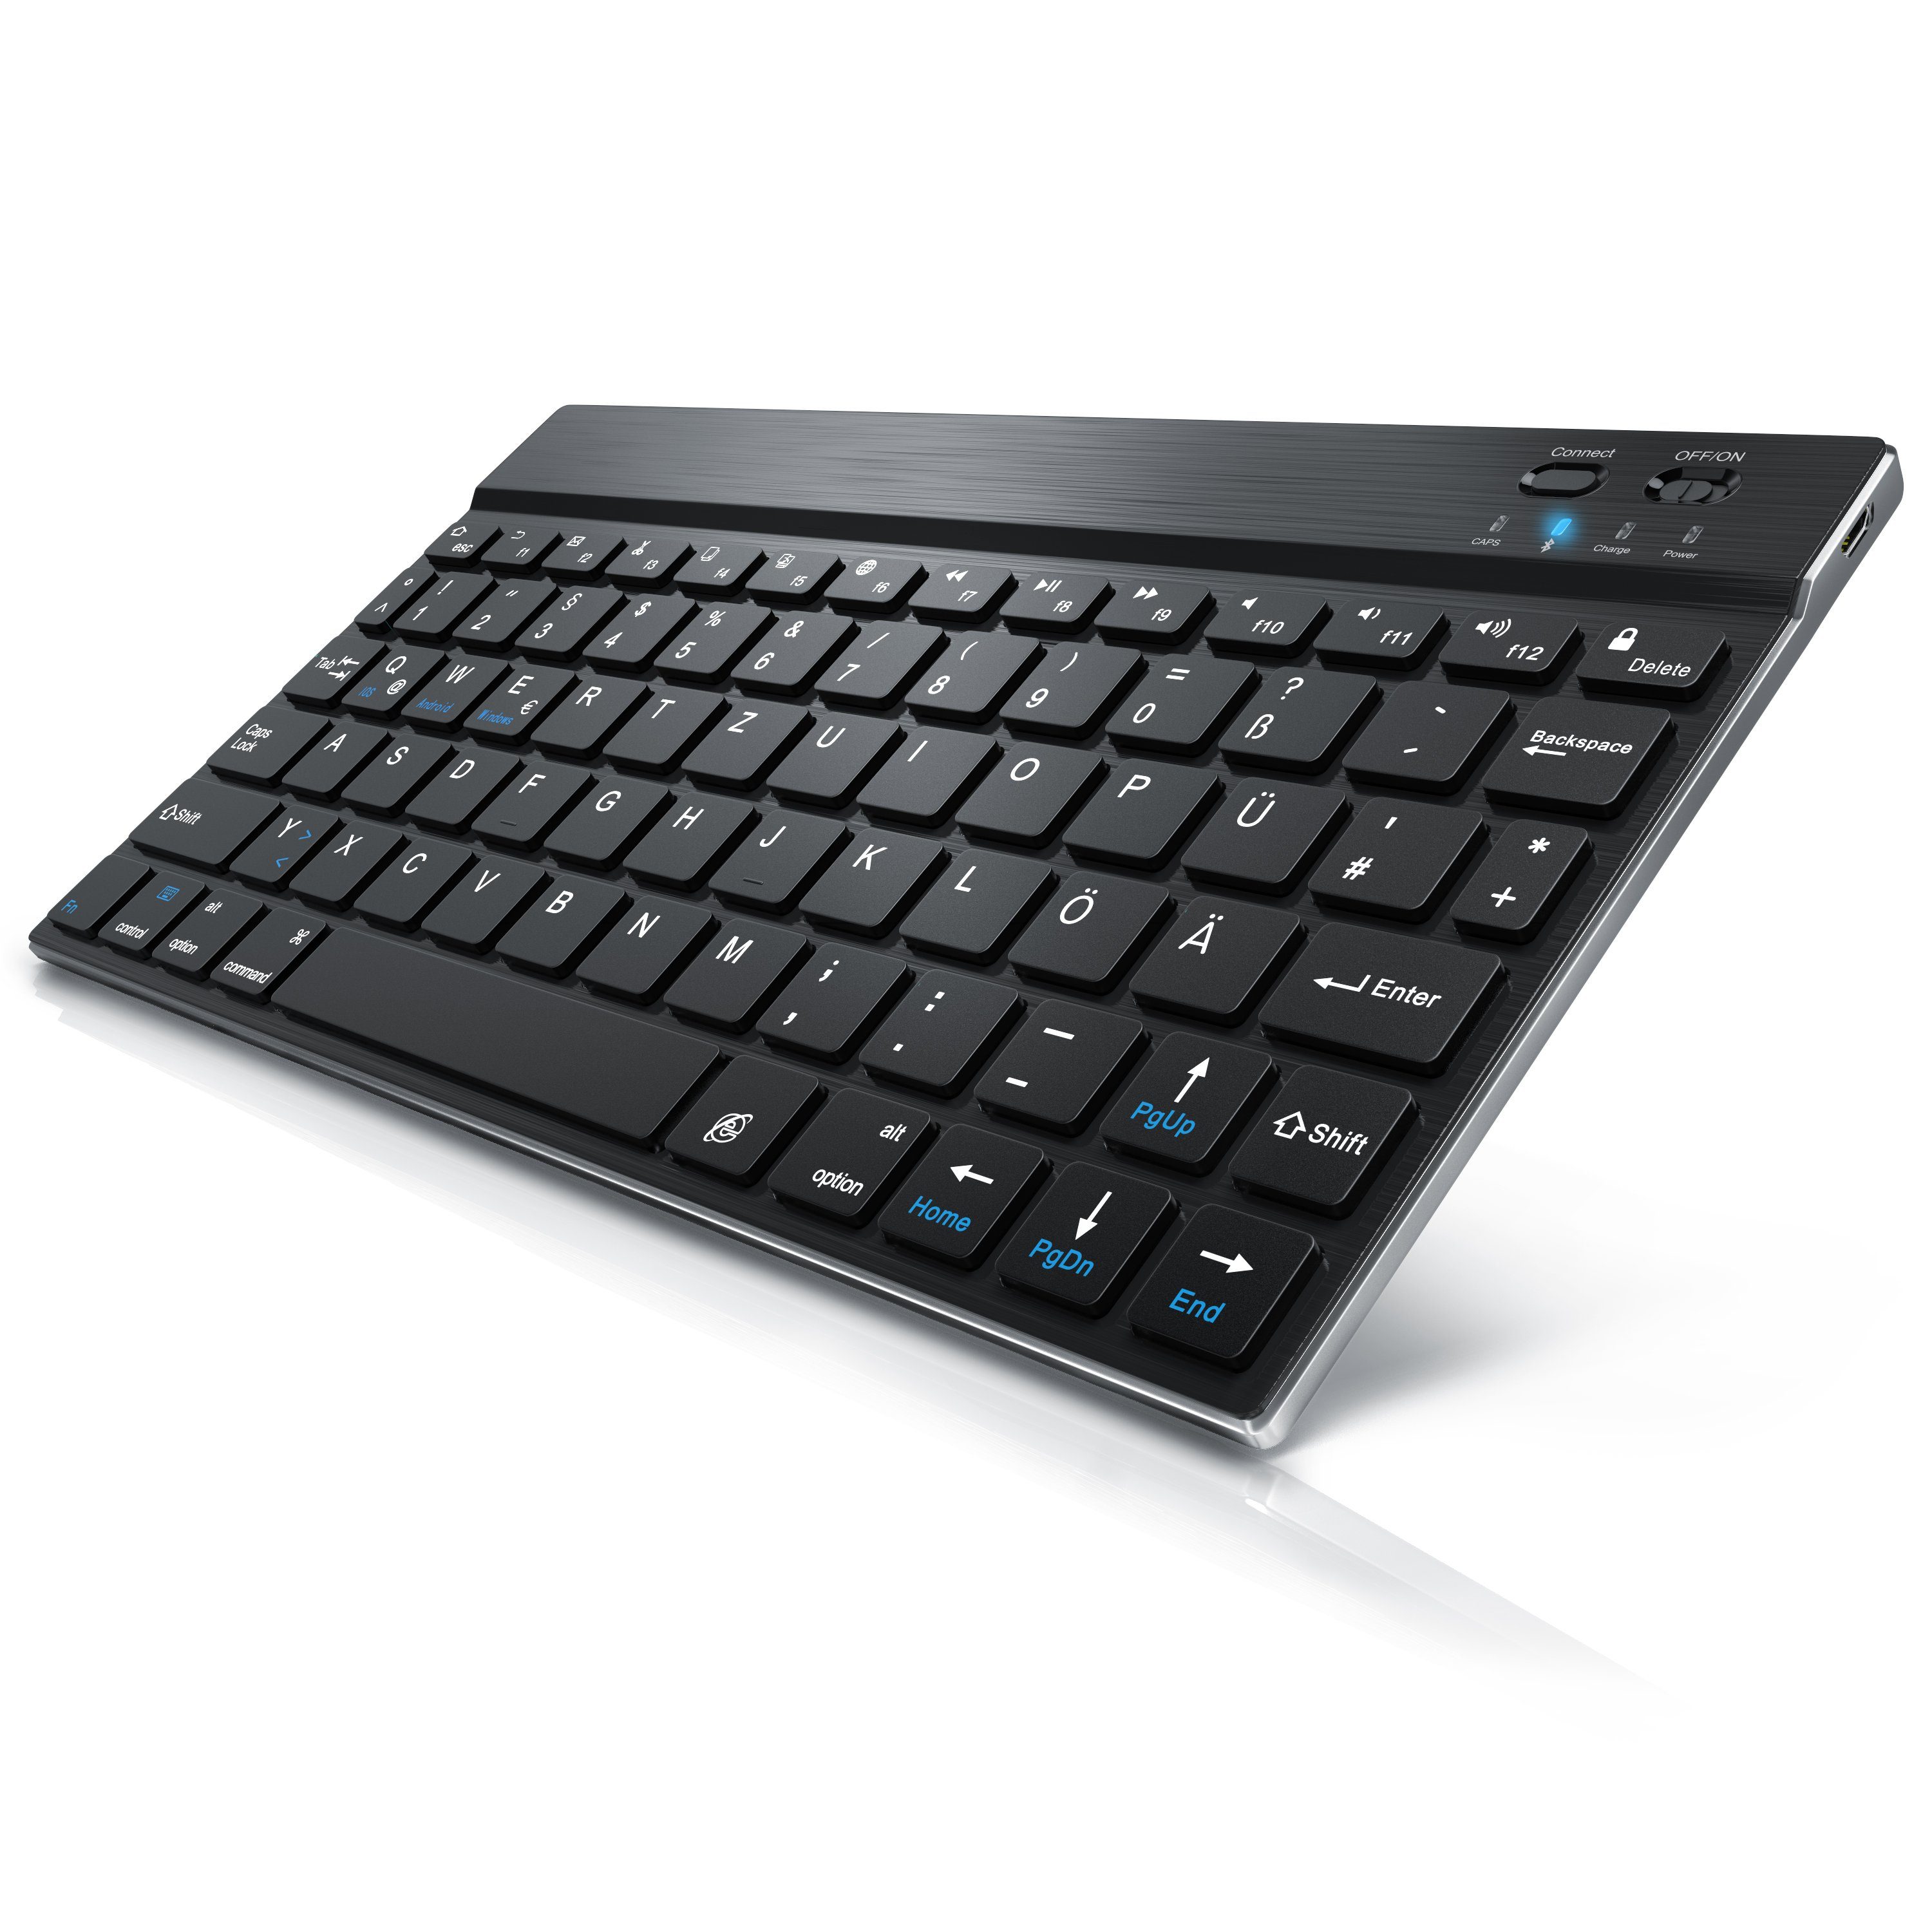 CSL Wireless-Tastatur (Ultra Slim Keyboard, Bluetooth, Alugehäuse, Deutsches Layout, BT 3.0) schwarz/silber